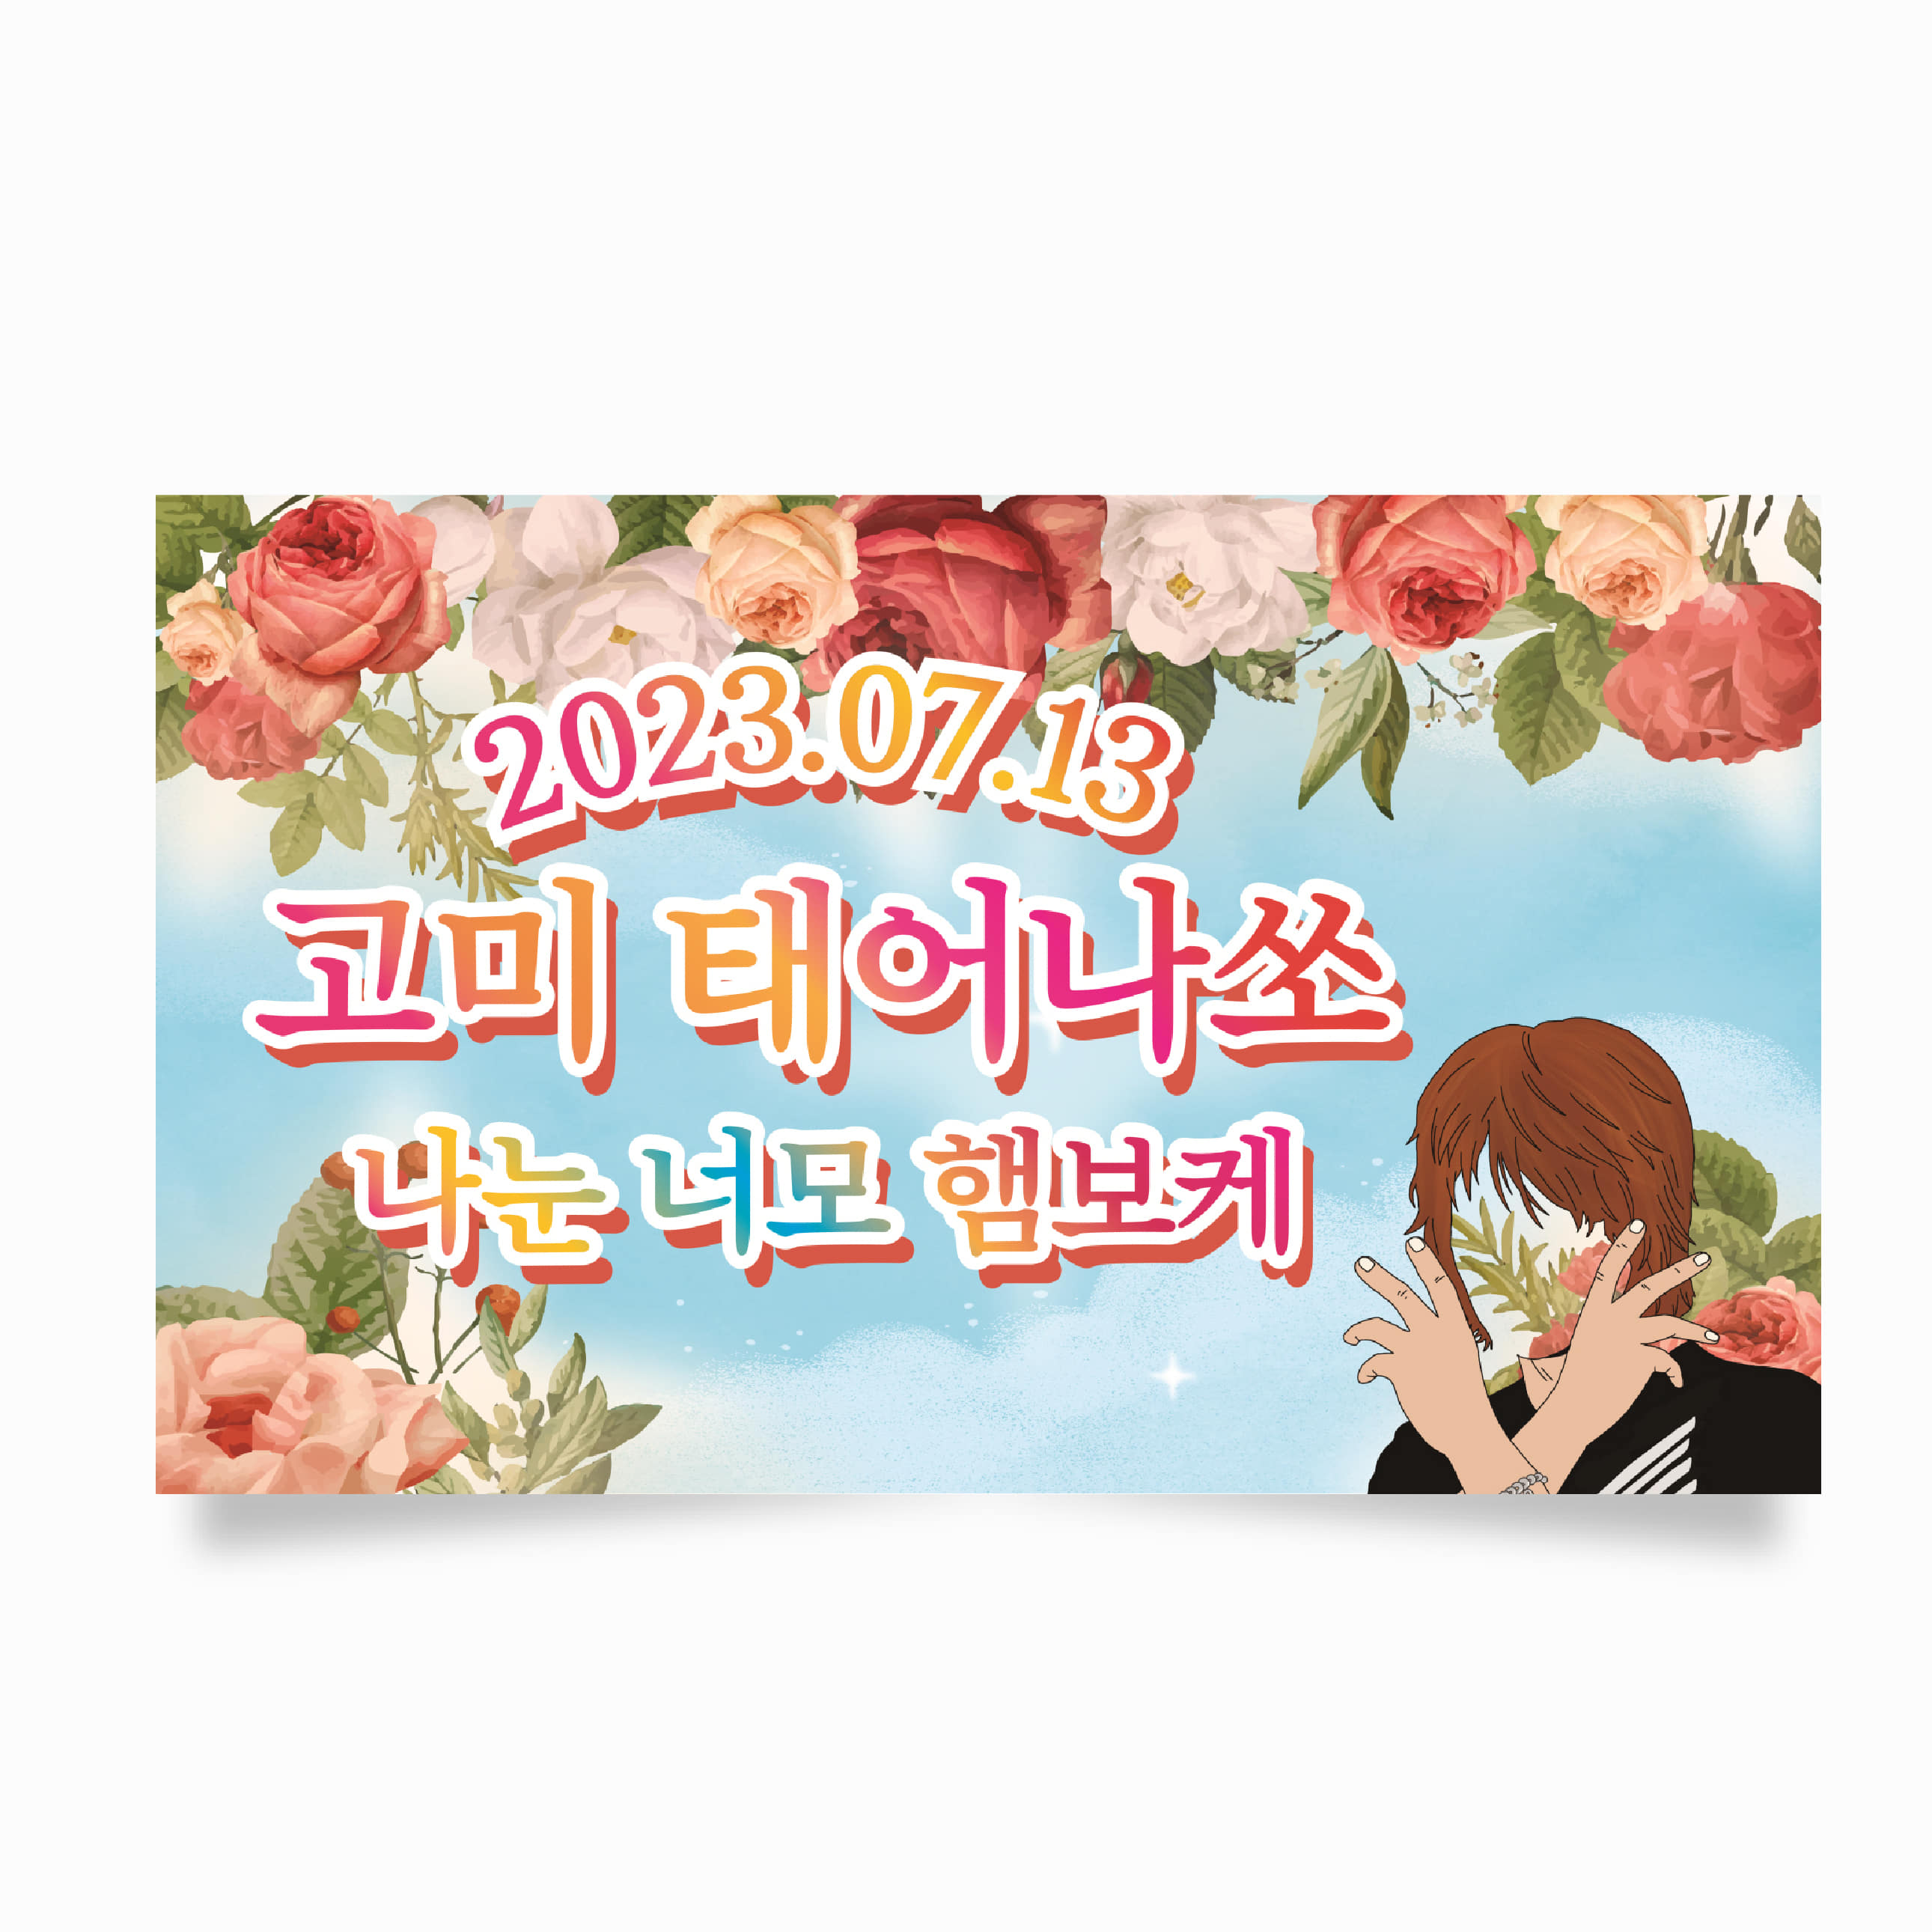 생일현수막 현수막 축하 이벤트 플랜카드 제작 HG0005